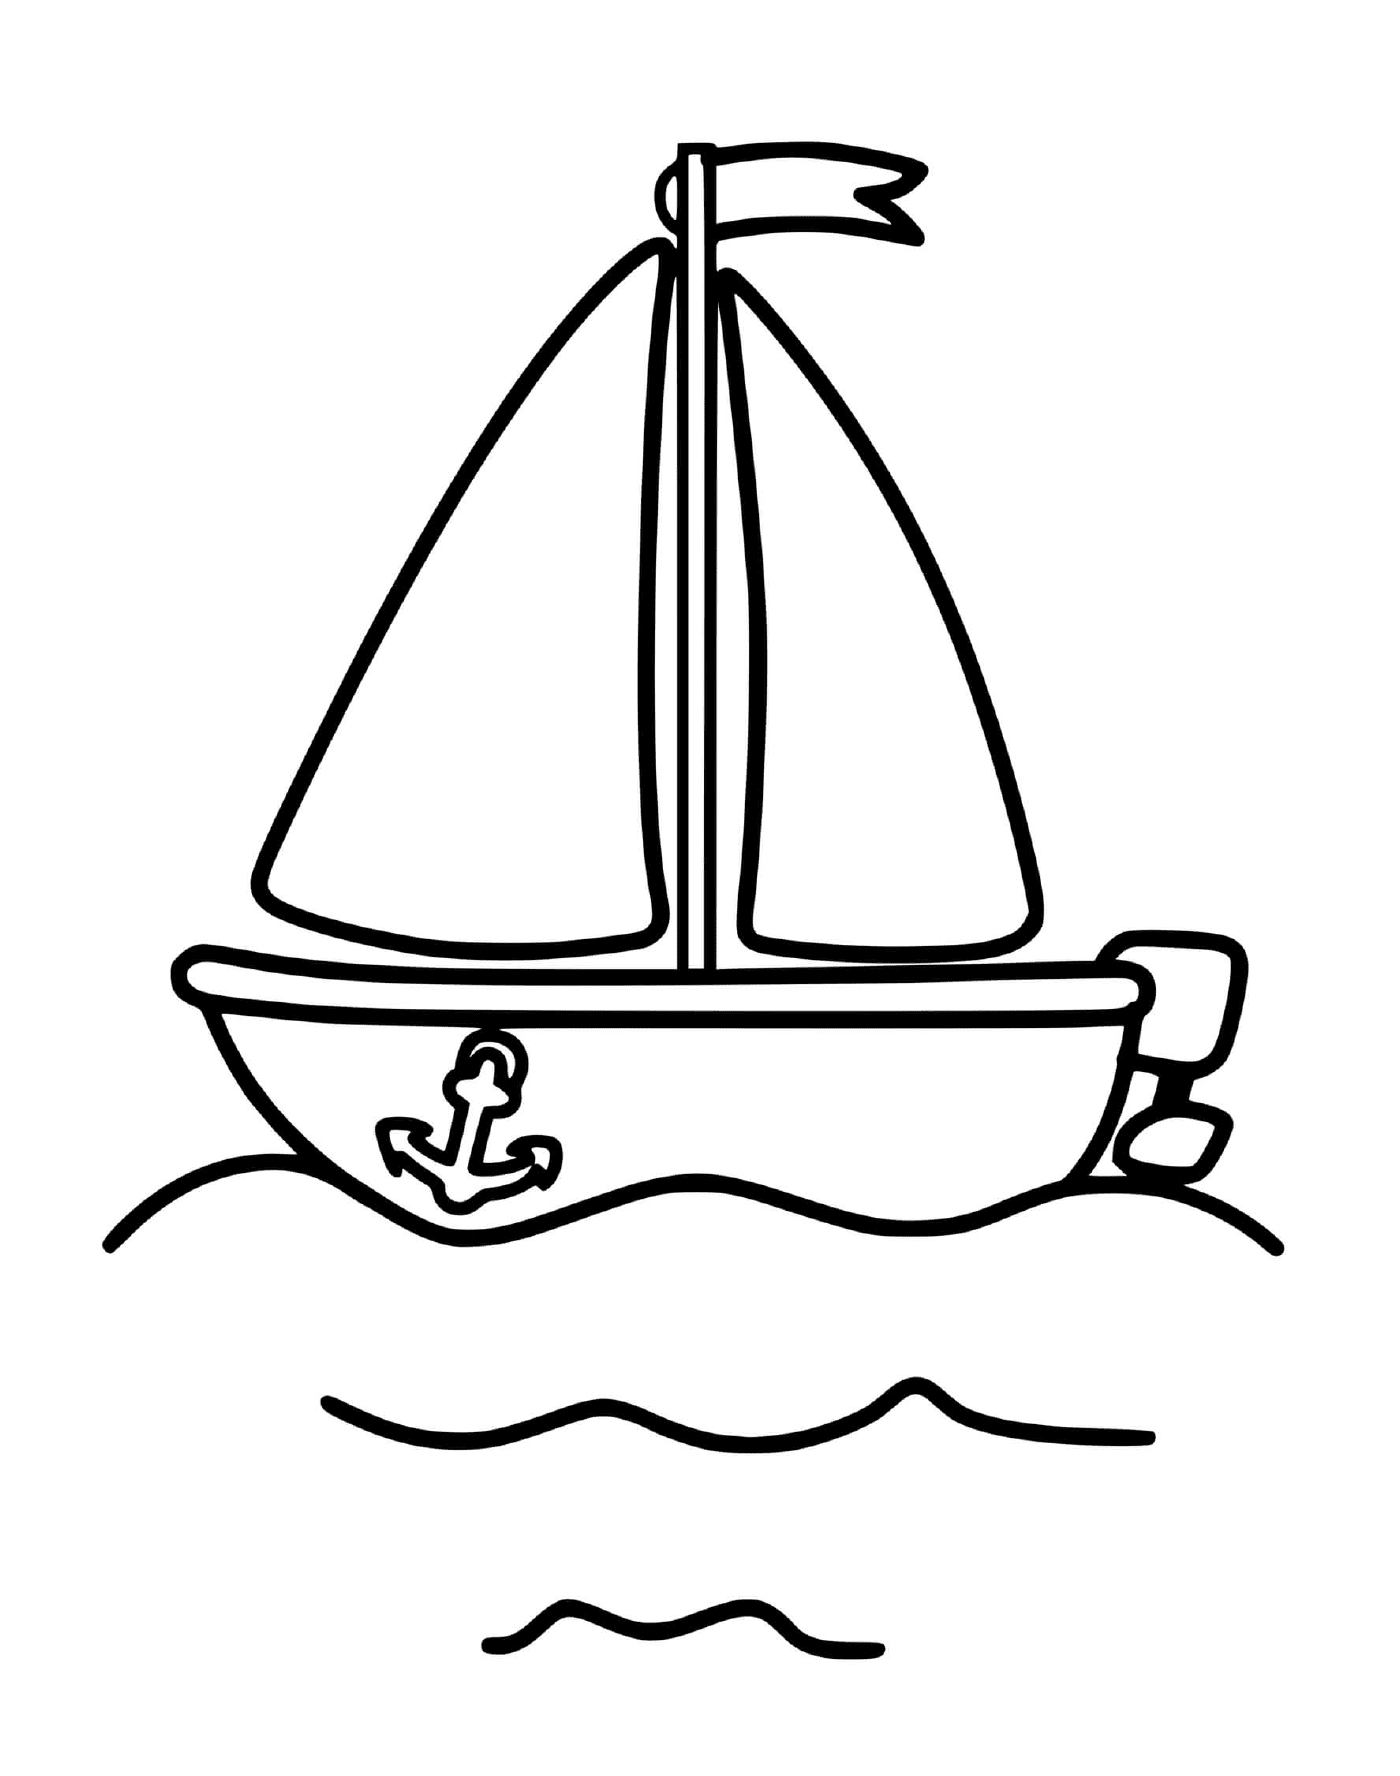  Ein Segelboot wird in einer Zeichnung gezeigt 